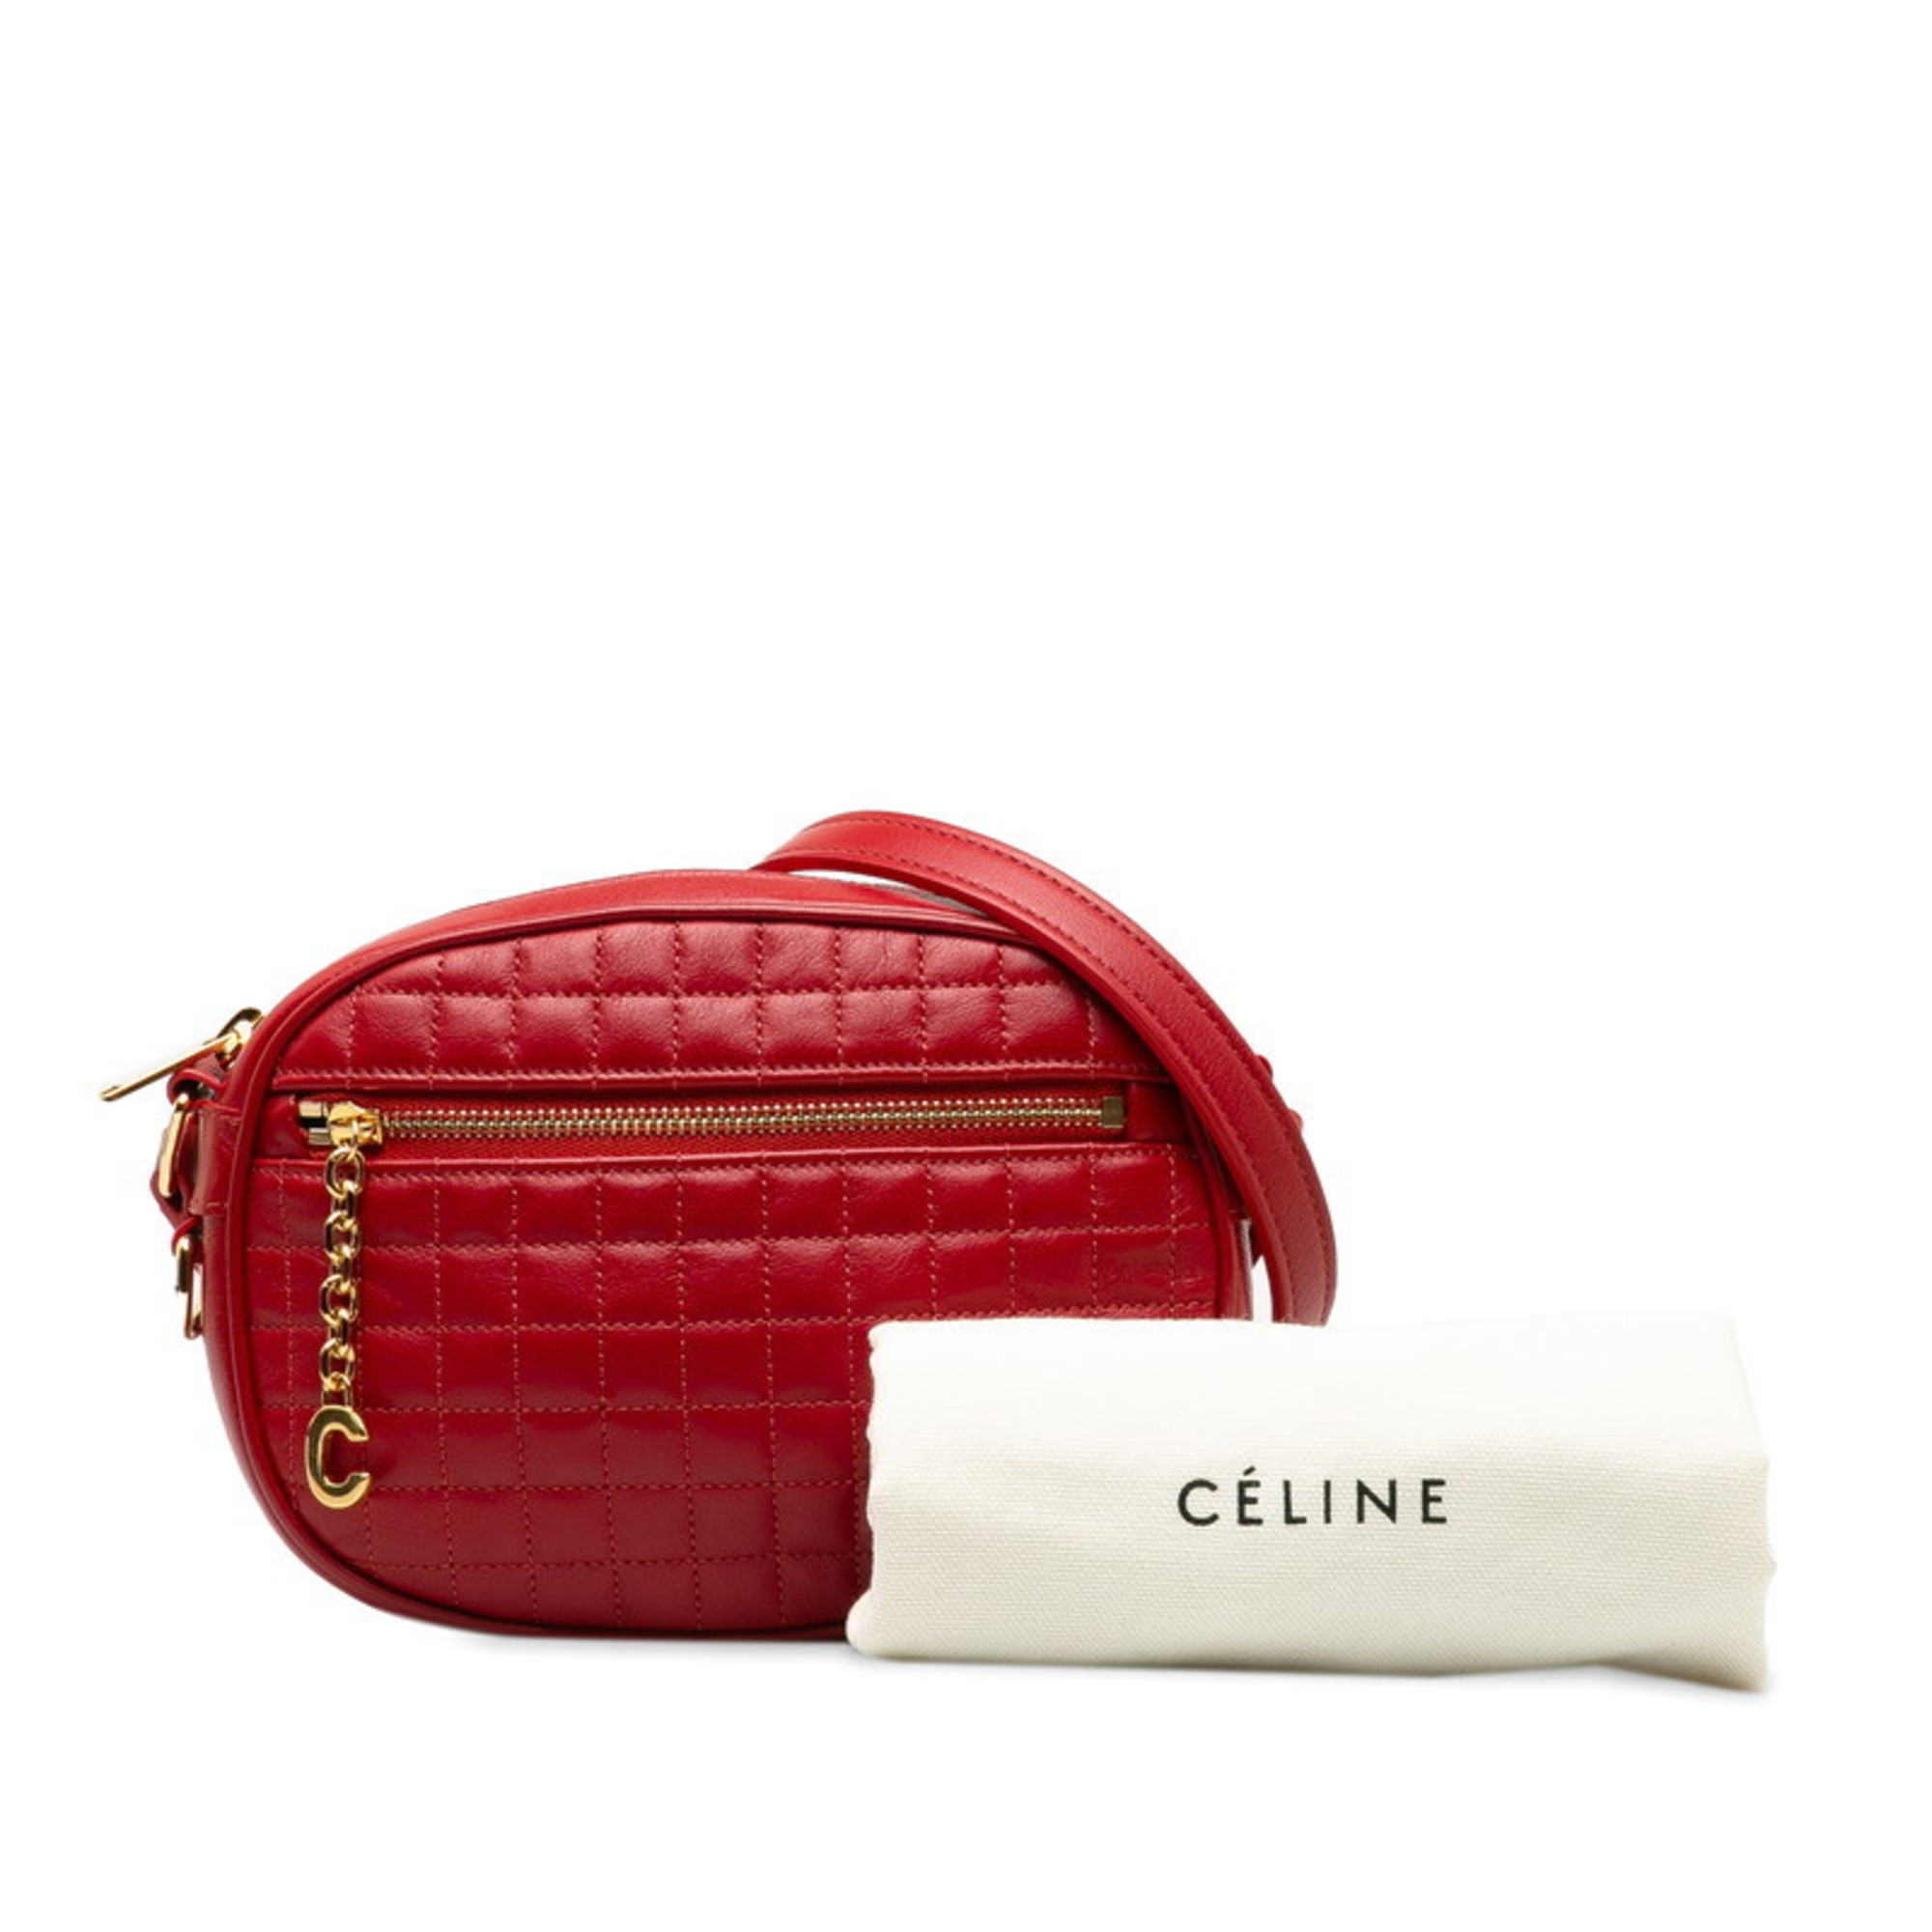 Celine C Small Camera Bag Shoulder Red Leather Women's CELINE